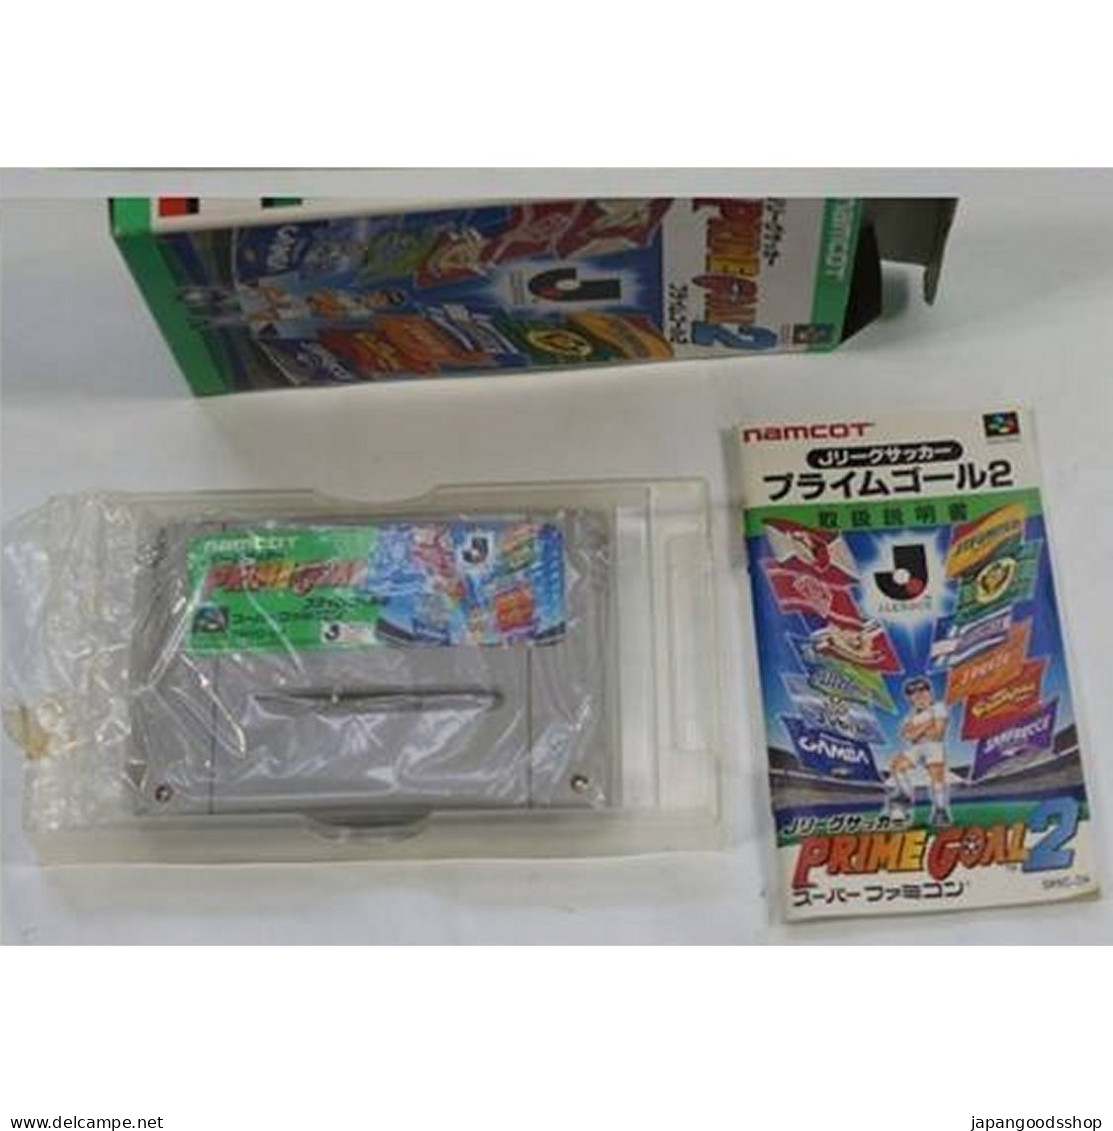 Super Famicom J League Soccer Prime Goal 2  SHVC-2H - Super Famicom